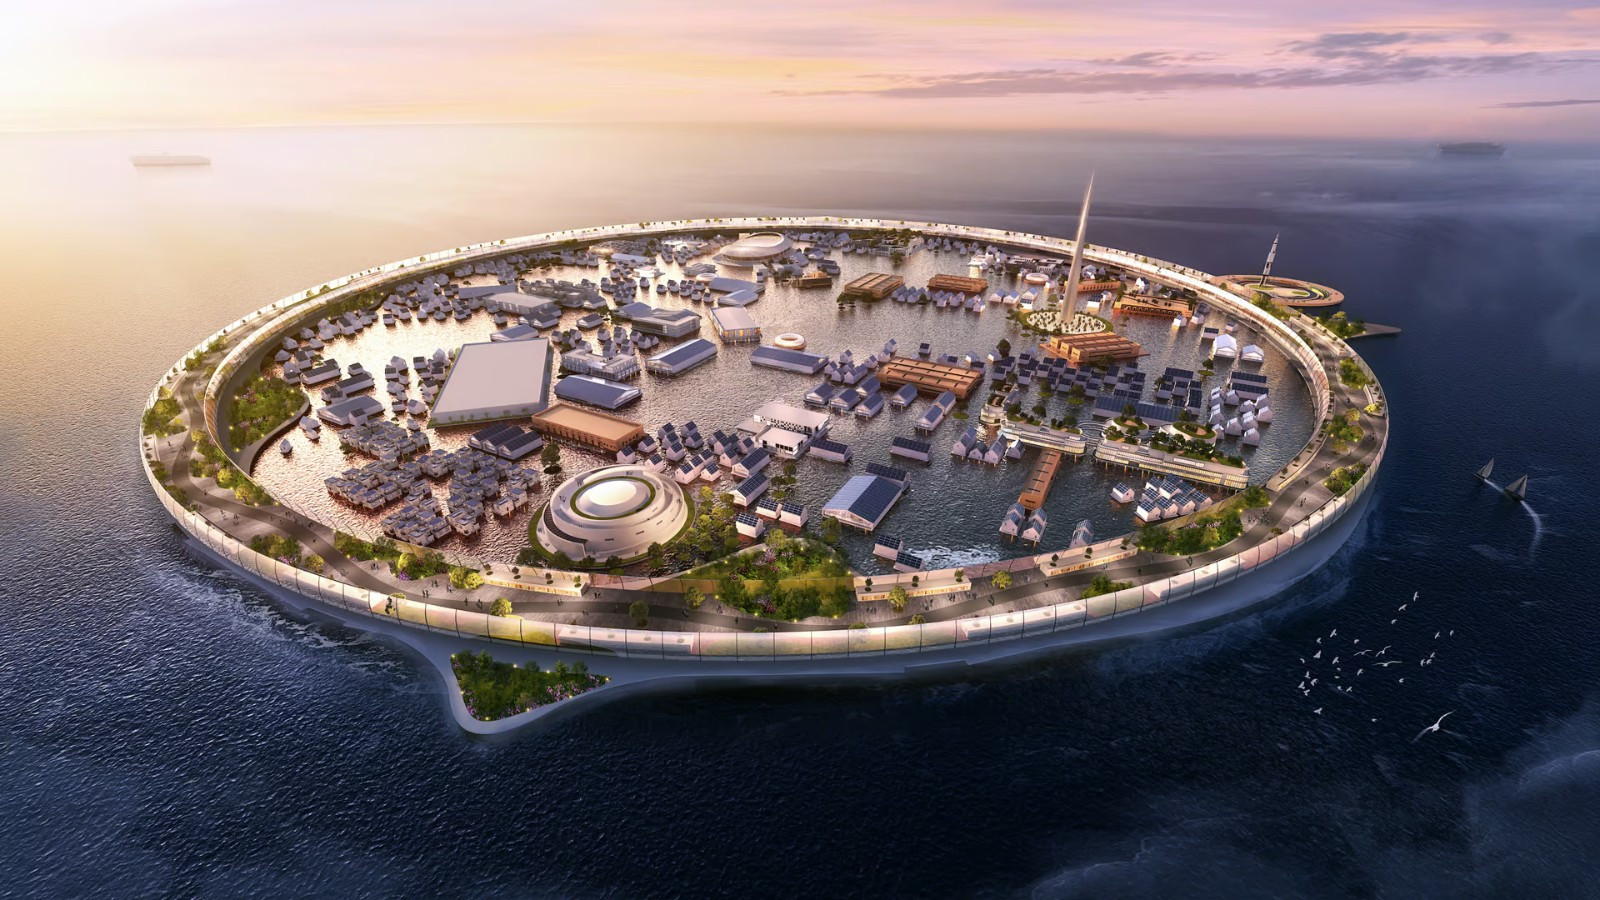 Планируется чрезвычайно амбициозный самодостаточный плавучий город на 40 000 человек